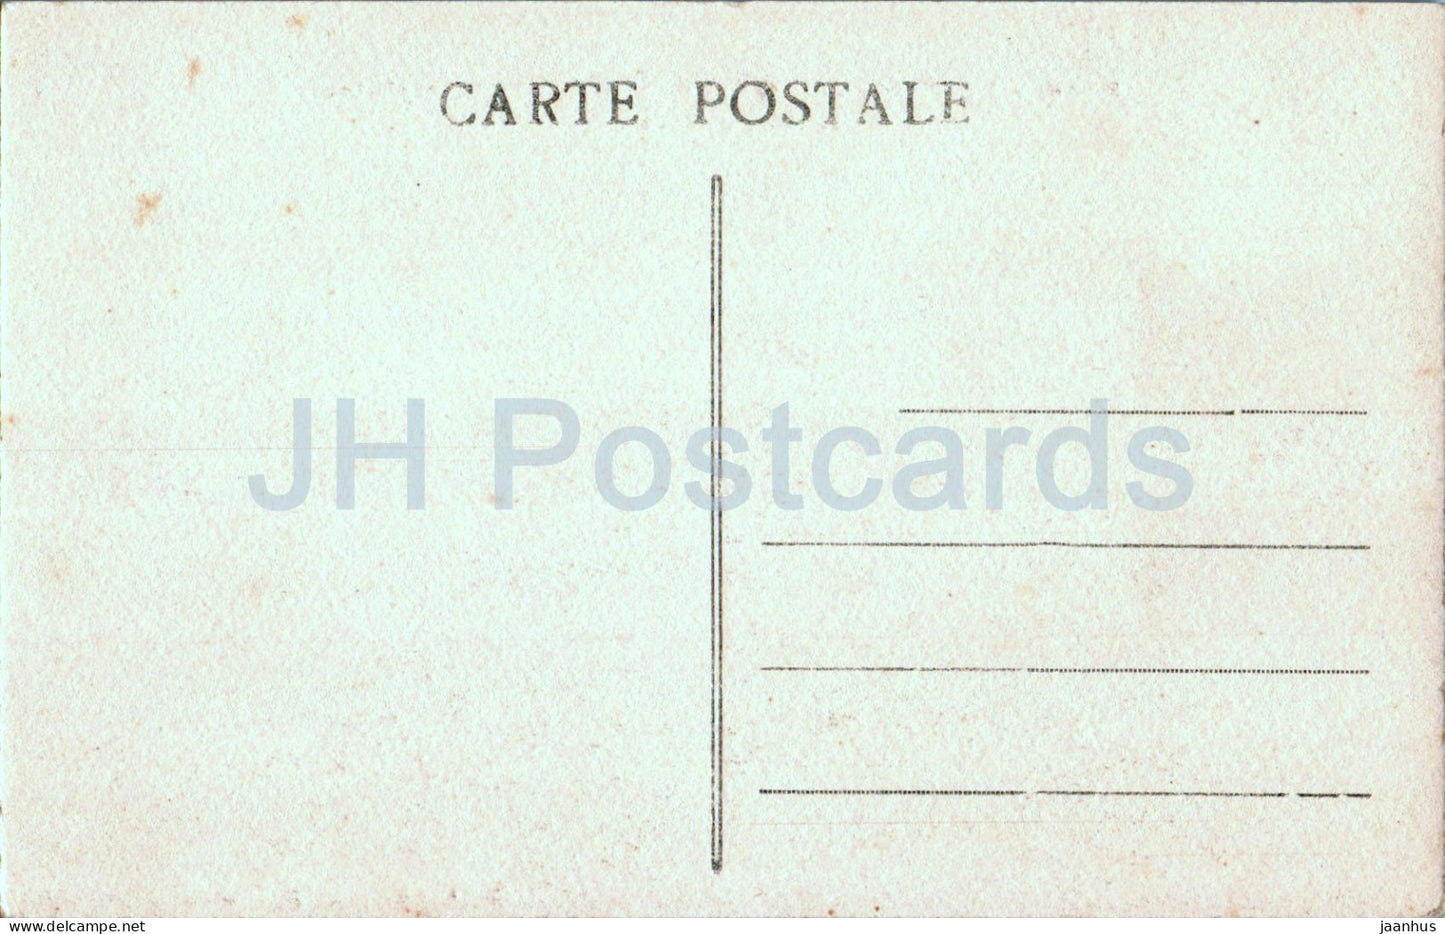 Le Phare et l'Abbaye de la Pointe St Mathieu Env de Brest - phare - 8388 - carte postale ancienne - France - inutilisée 